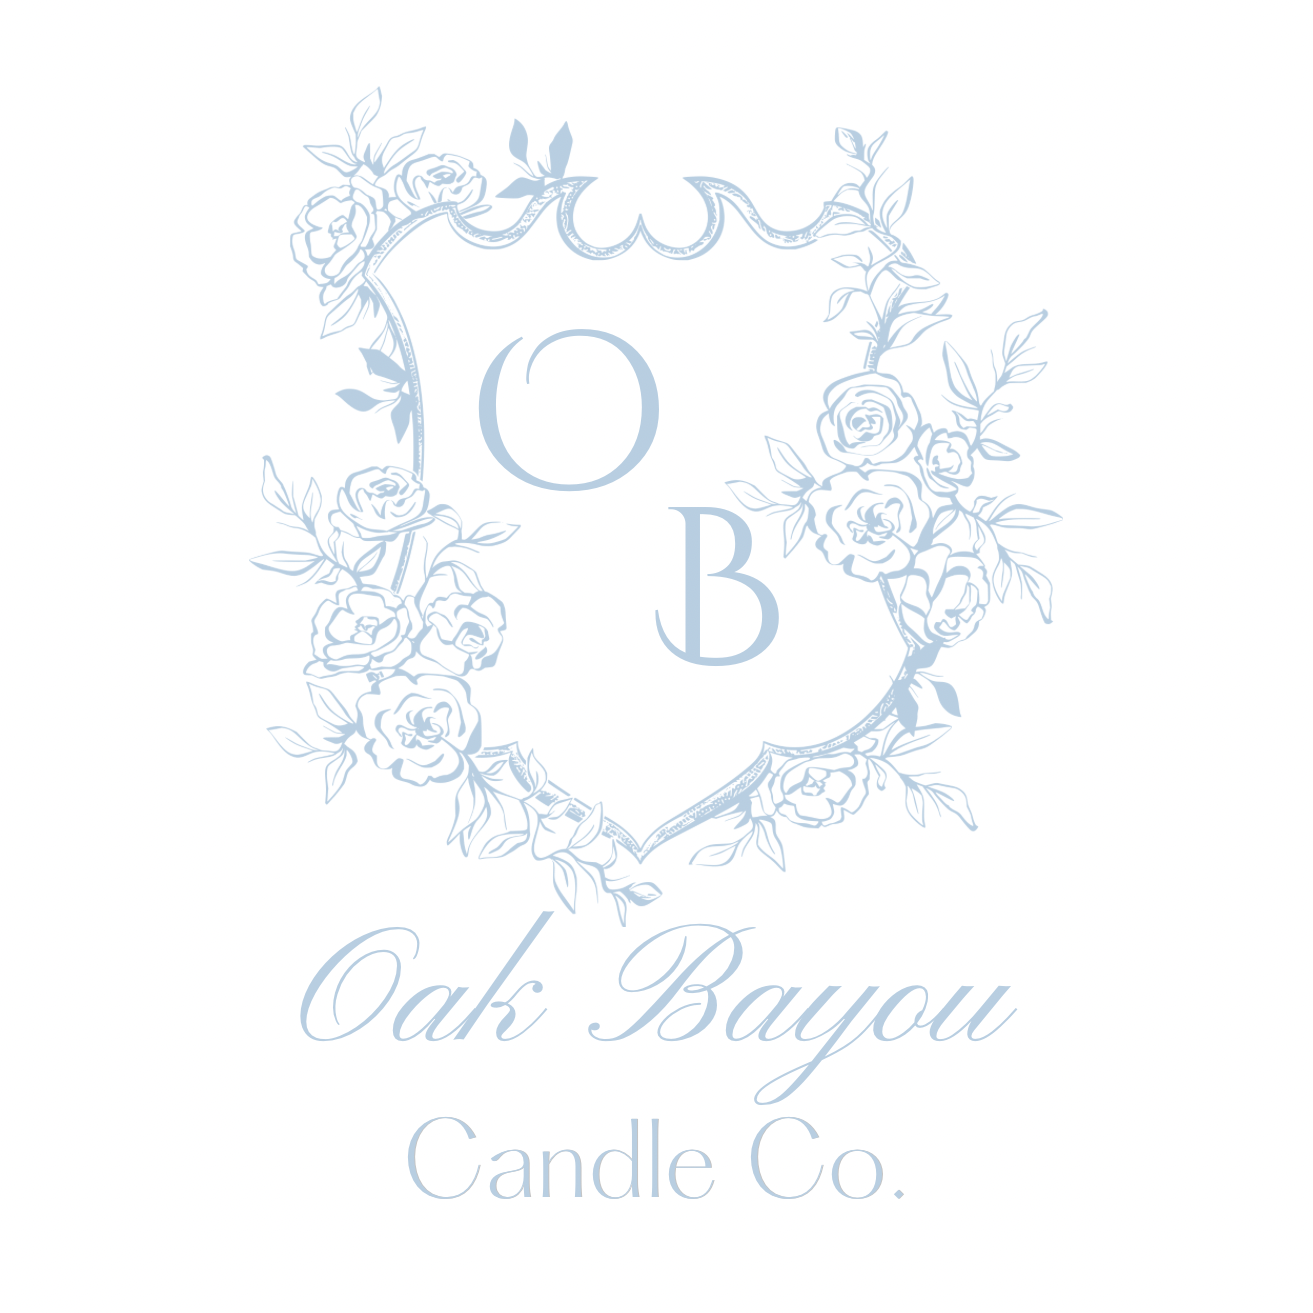 Oak Bayou Candle Co.